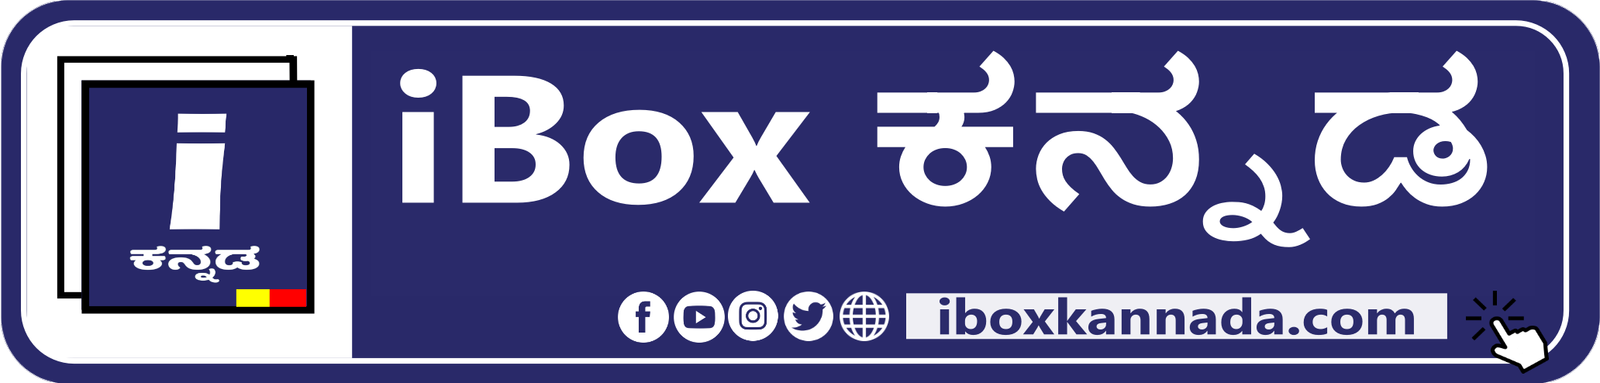 iBox Kannada